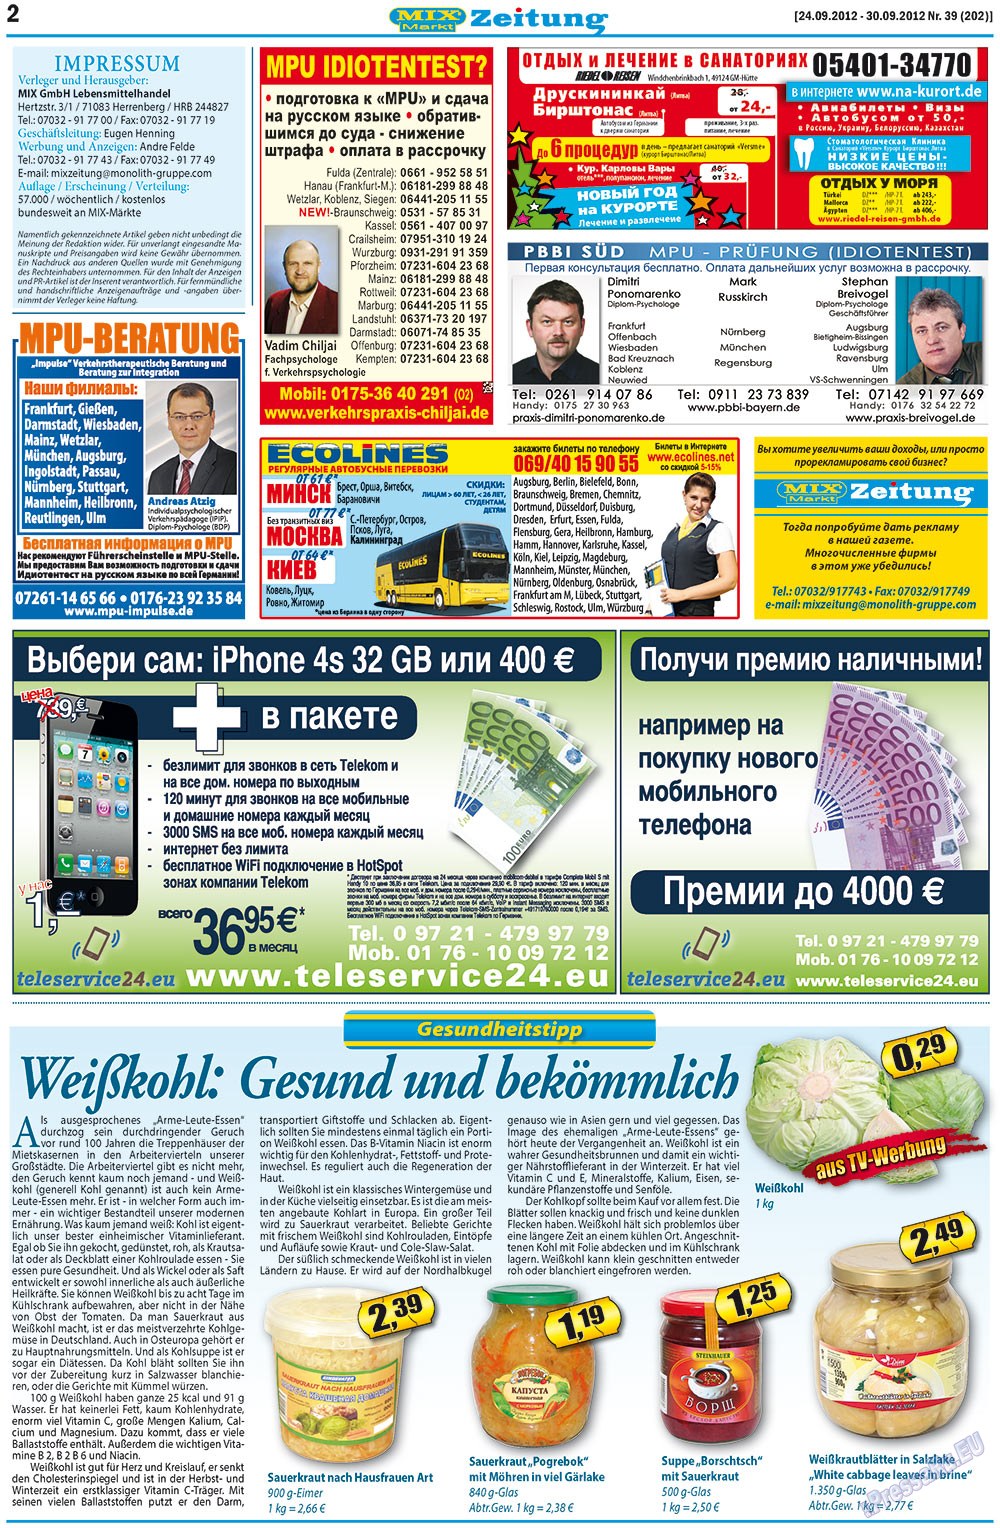 MIX-Markt Zeitung, газета. 2012 №39 стр.2